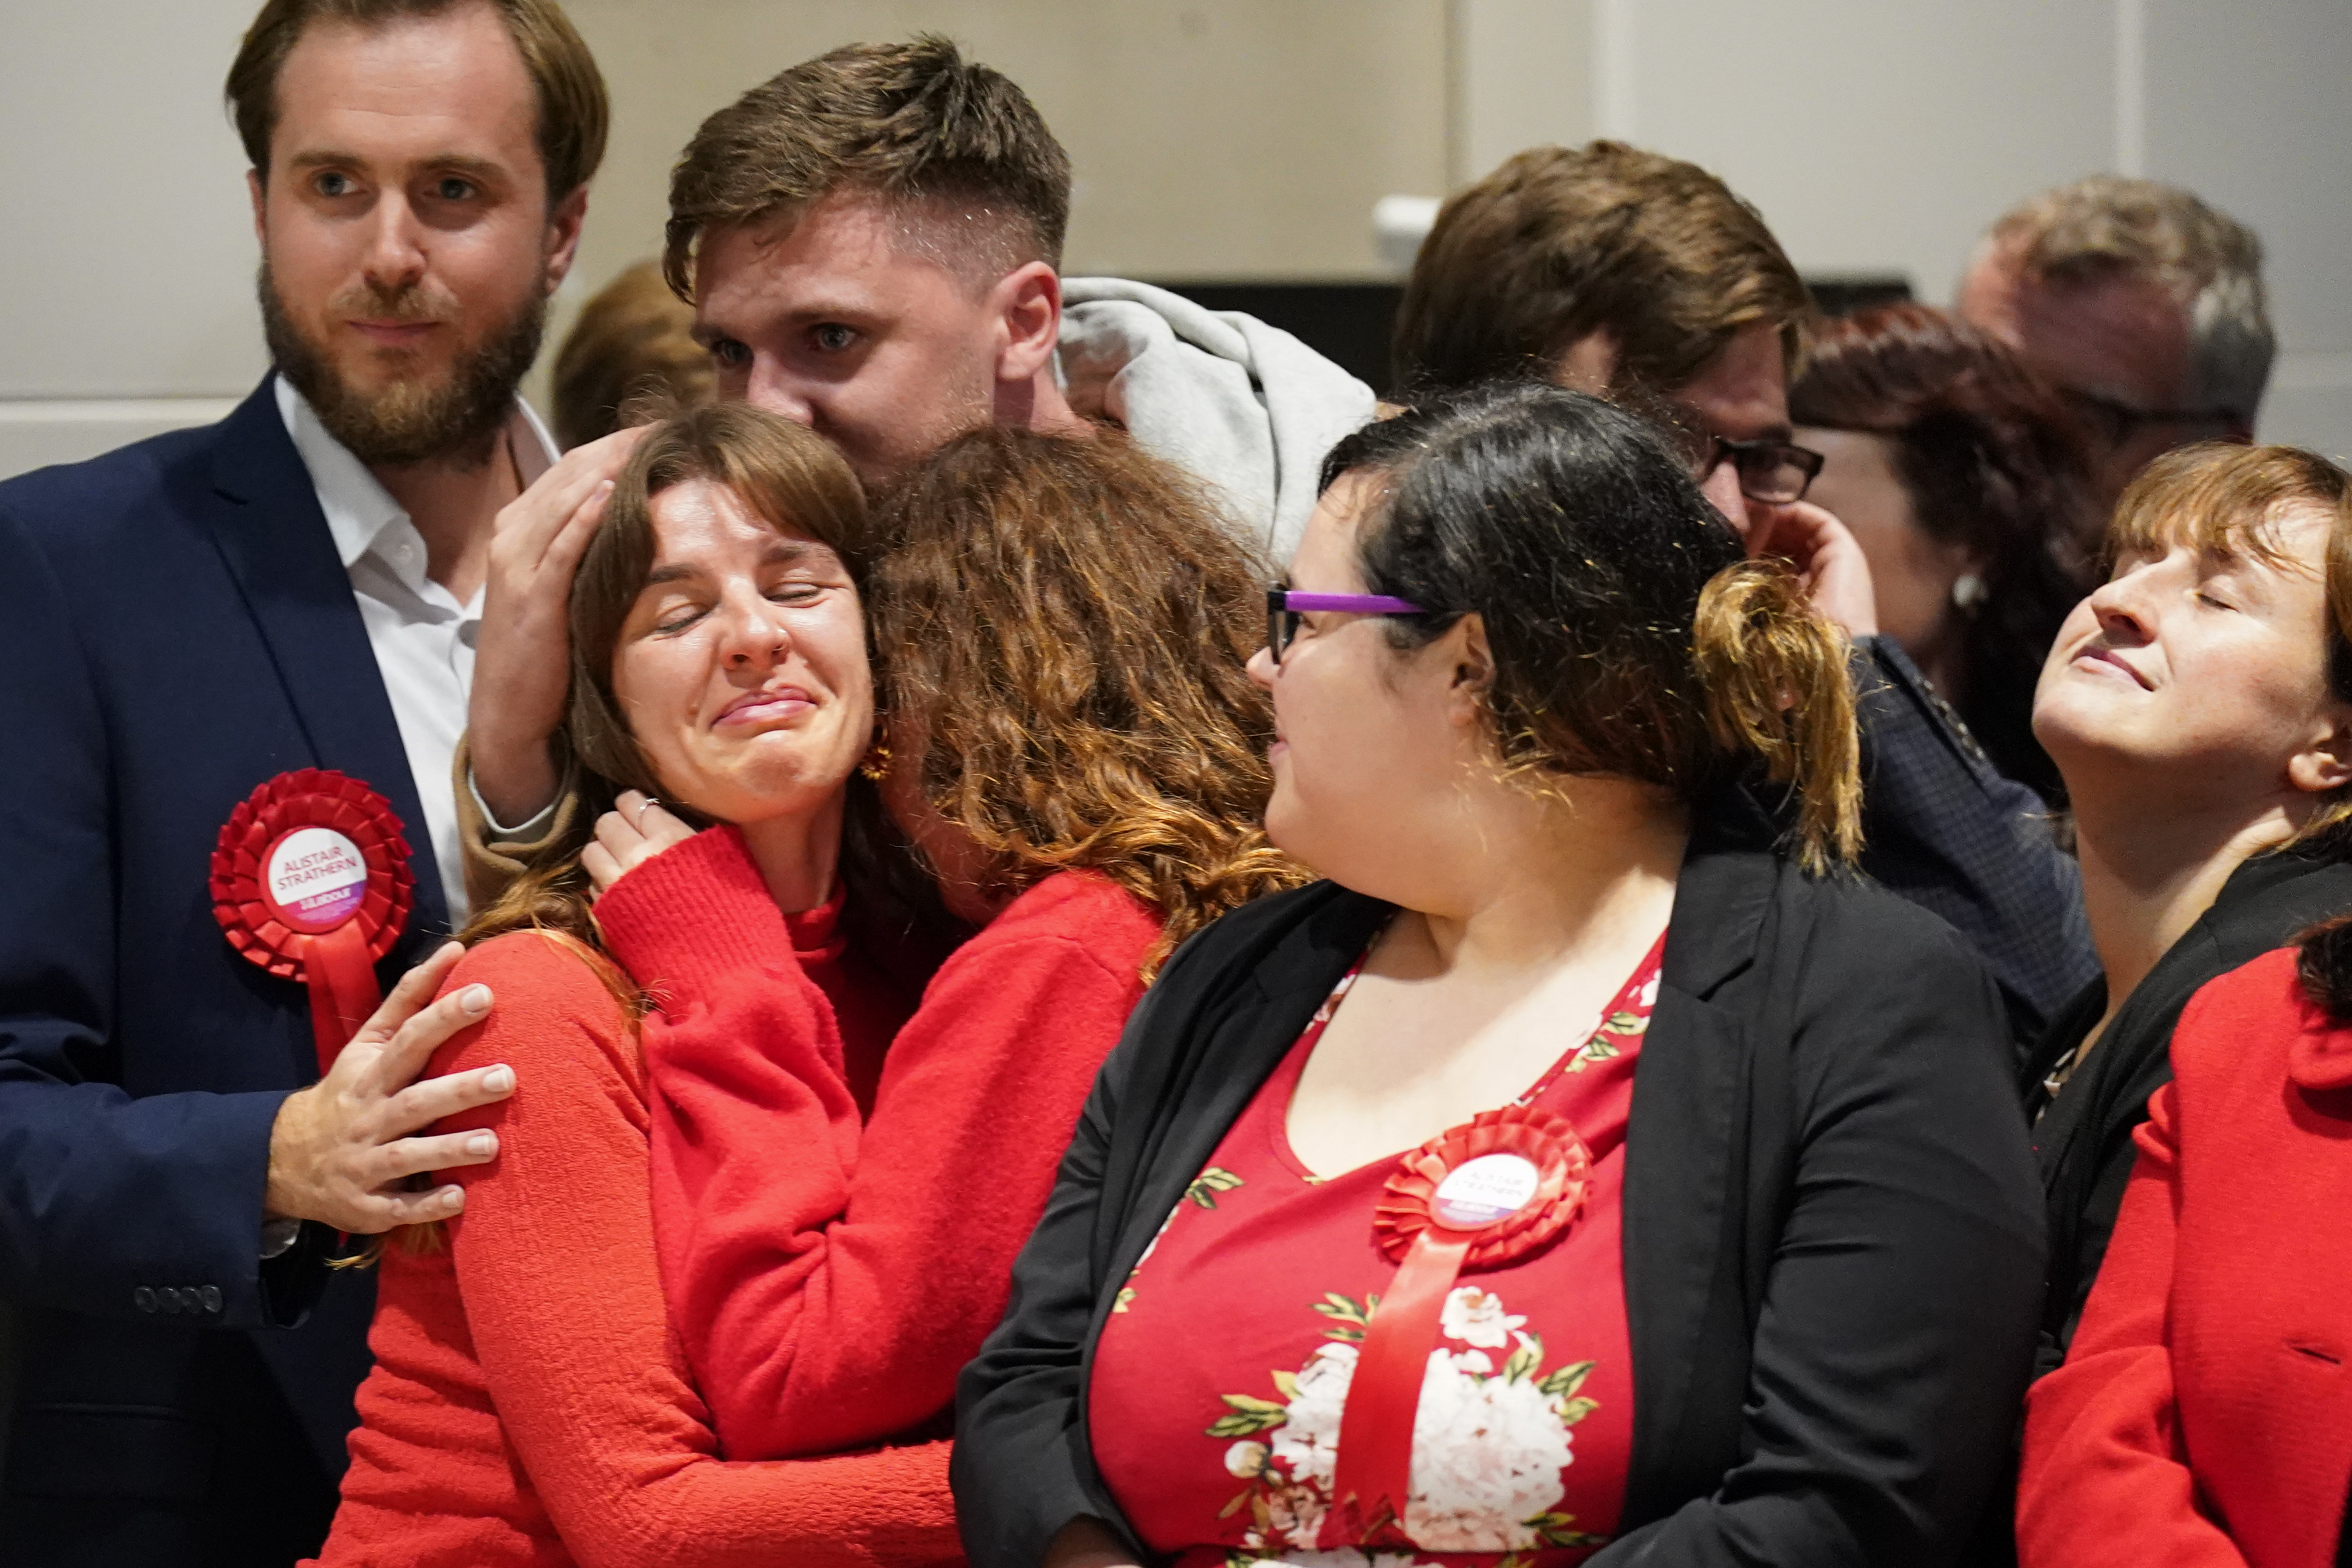 Er wurde von emotionalen Labour-Anhängern angefeuert, darunter auch seine Partnerin Megan Corton-Scott (links).